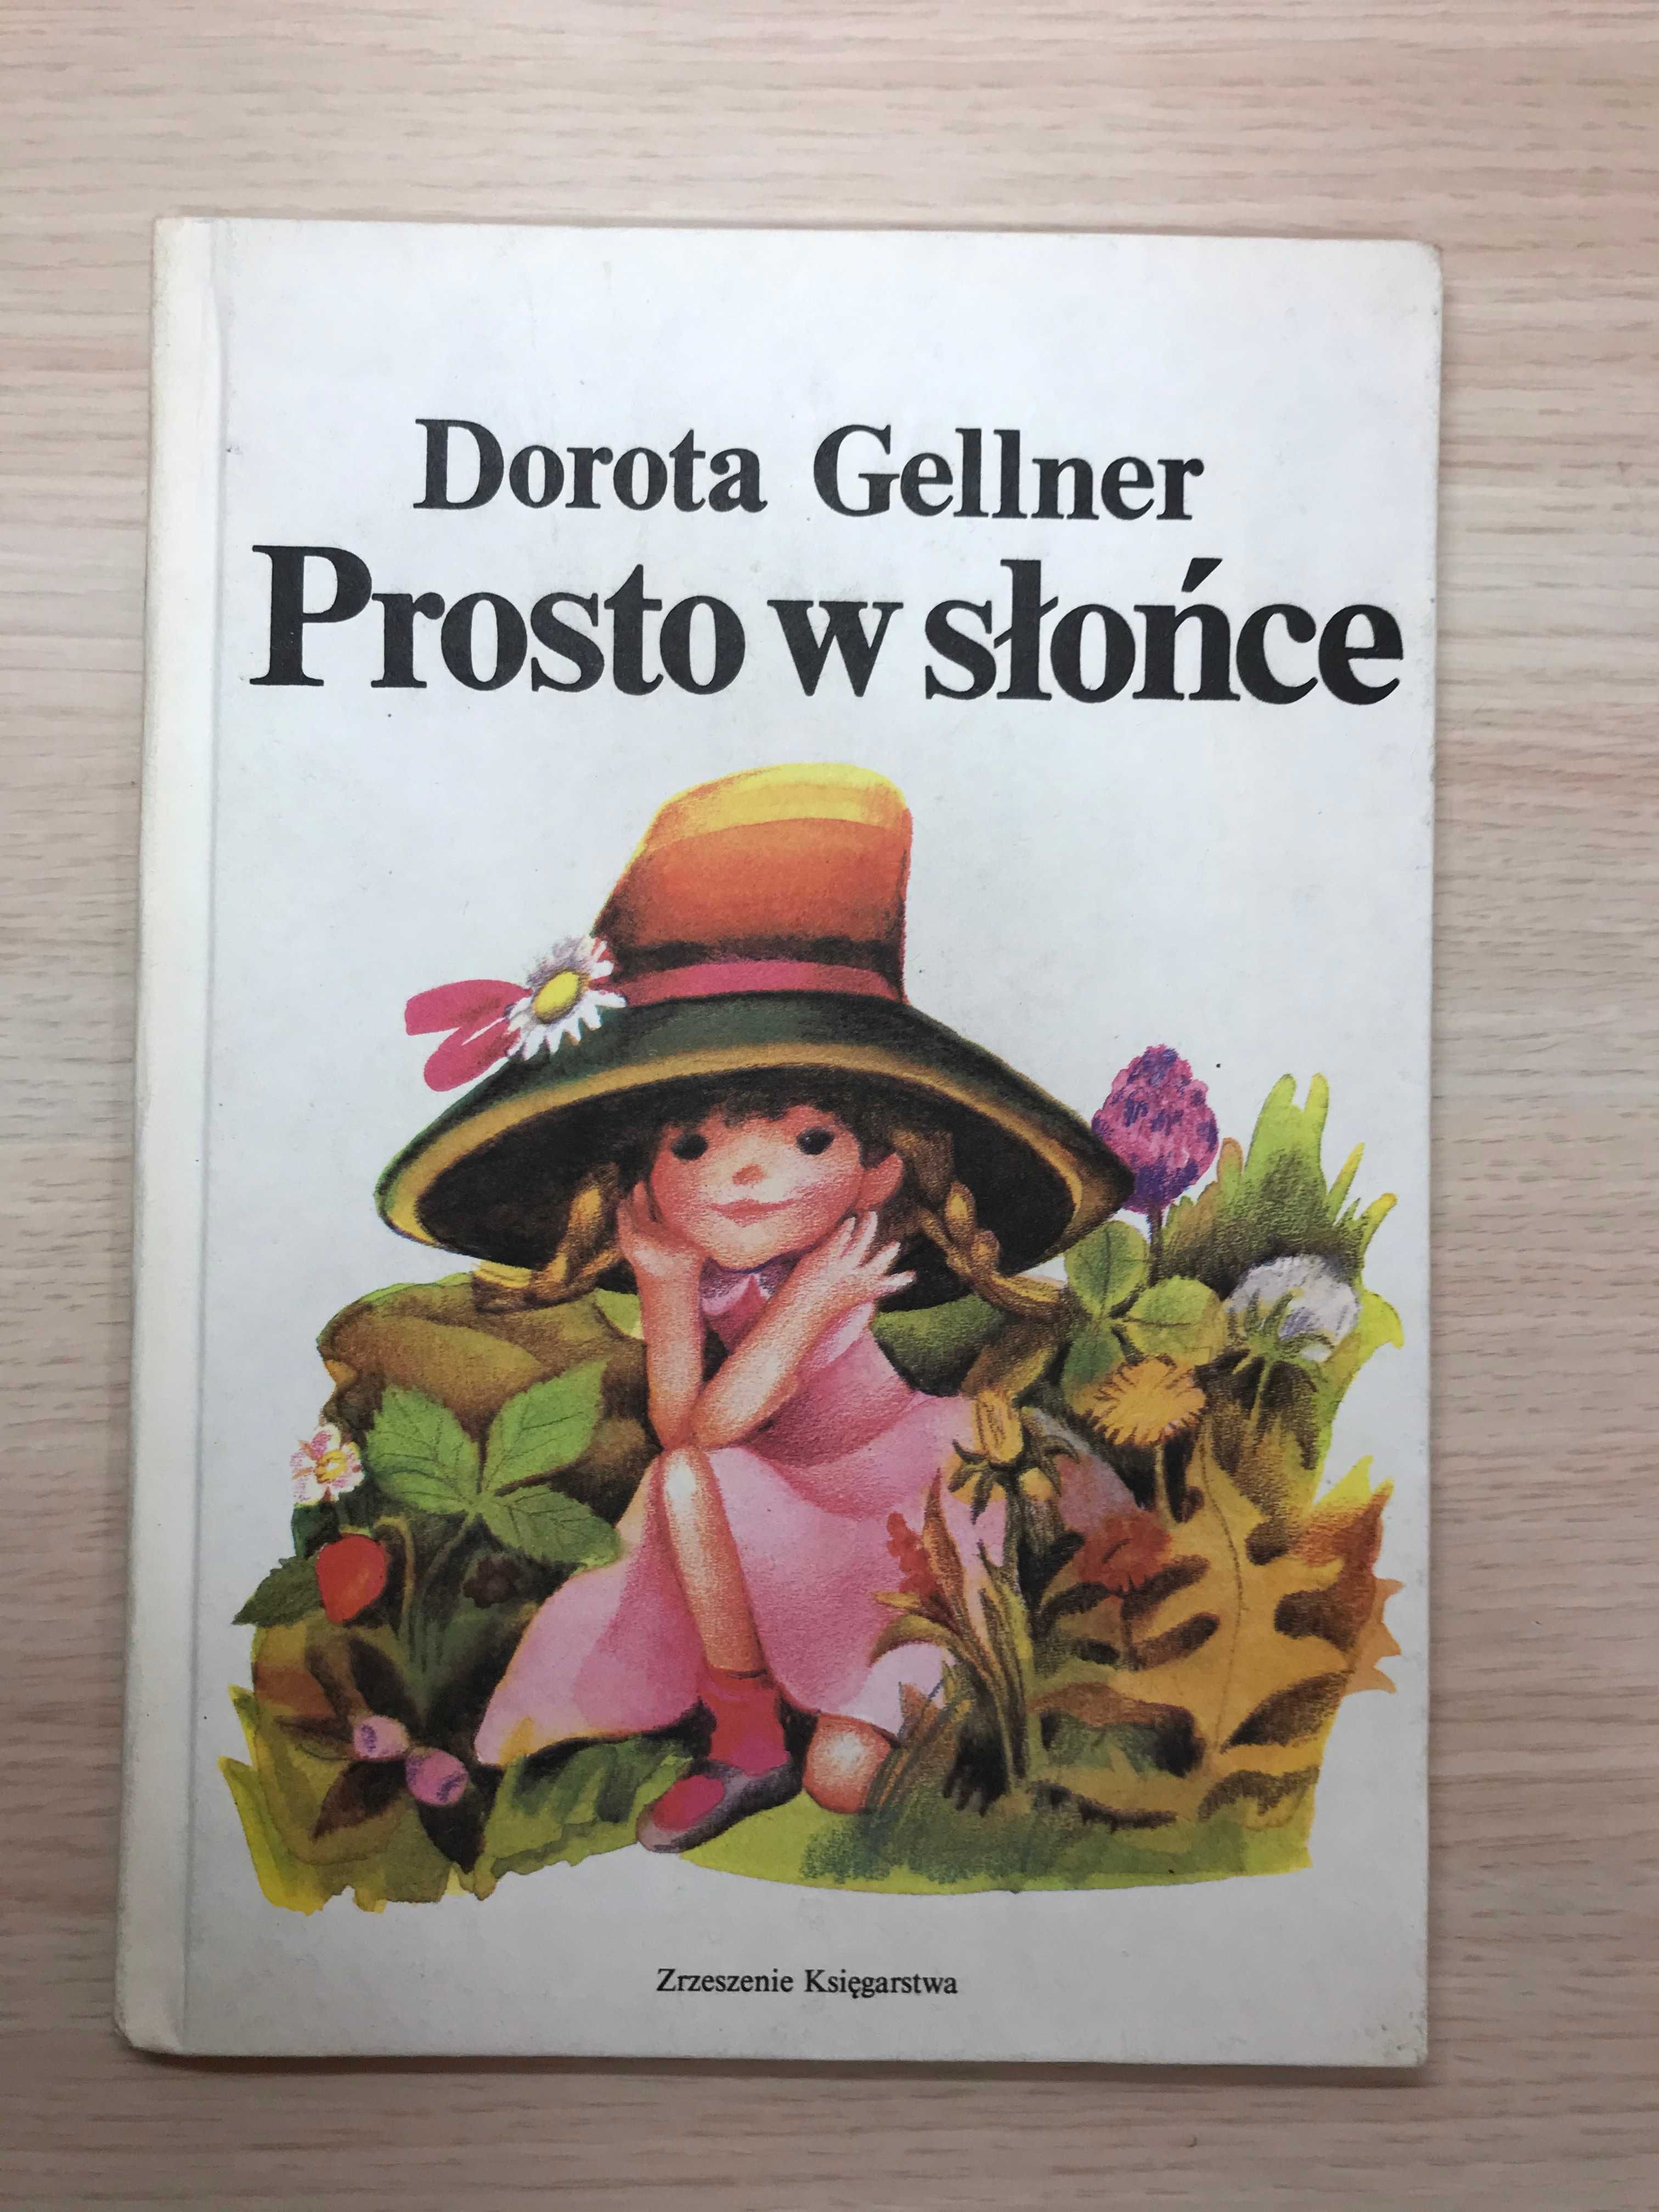 Prosto w słońce - Dorota Gellner Balki PRL wiersze lata 80